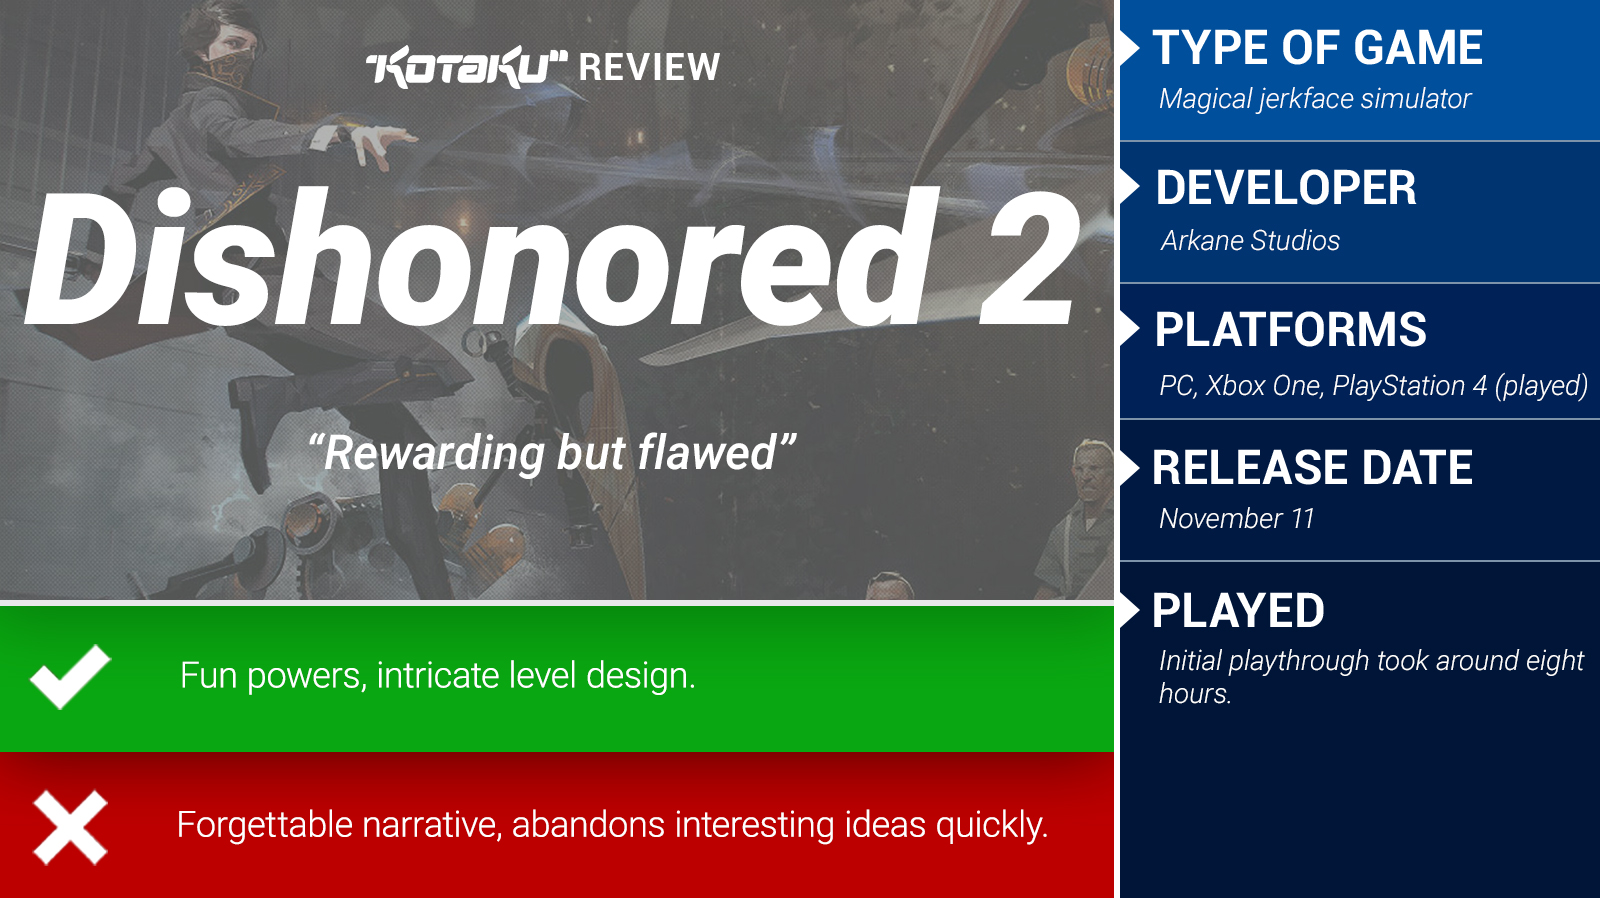 Dishonored 2 : The Kotaku Review